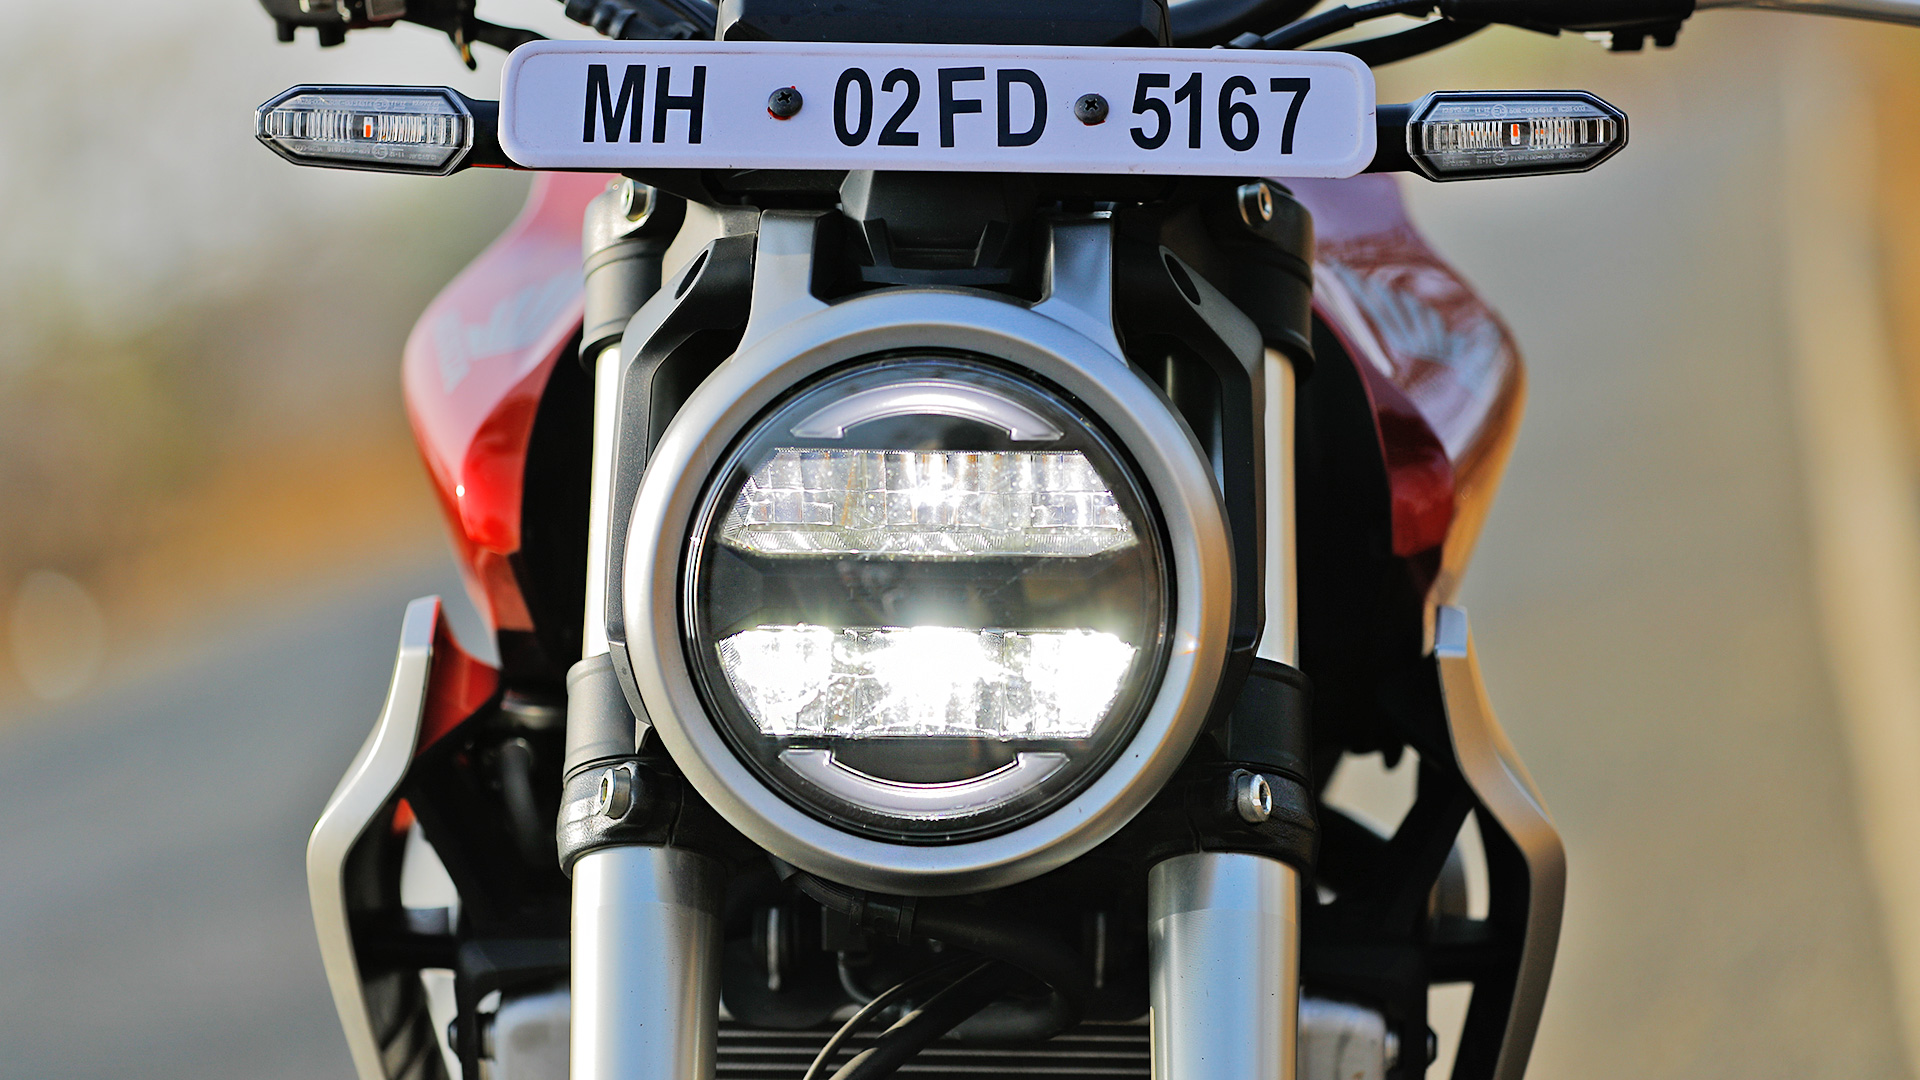 Honda CB300R 2019 STD